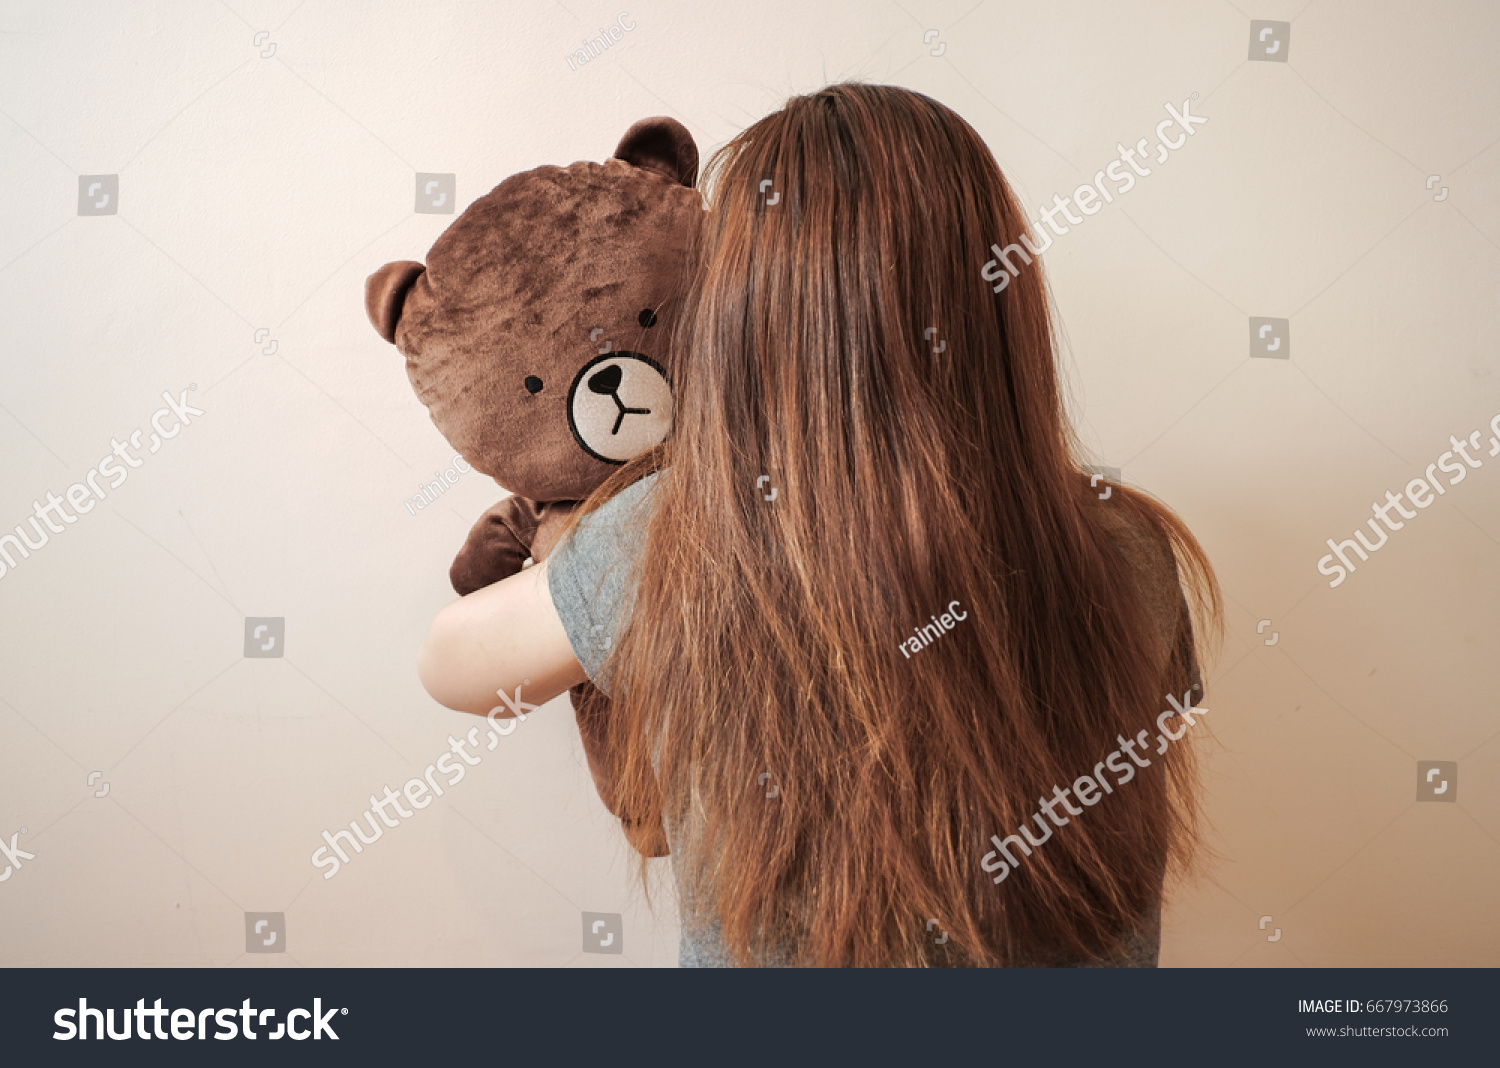 teddy bear with hair